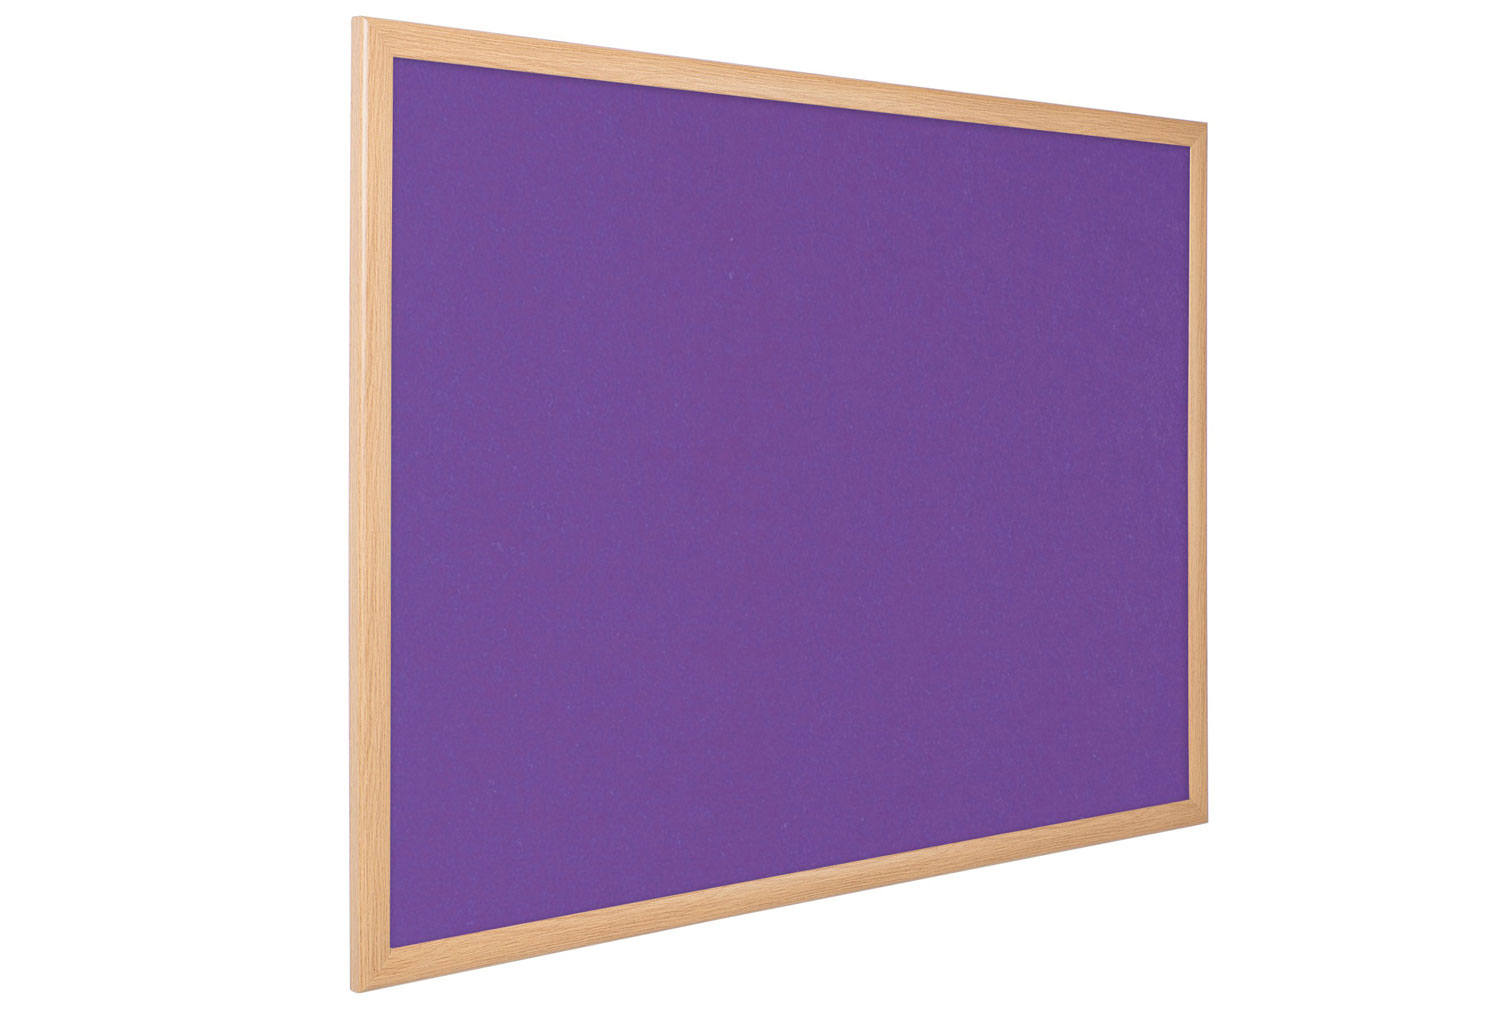 Eco-Colour Light Oak Noticeboard, 120wx90h (cm), Purple